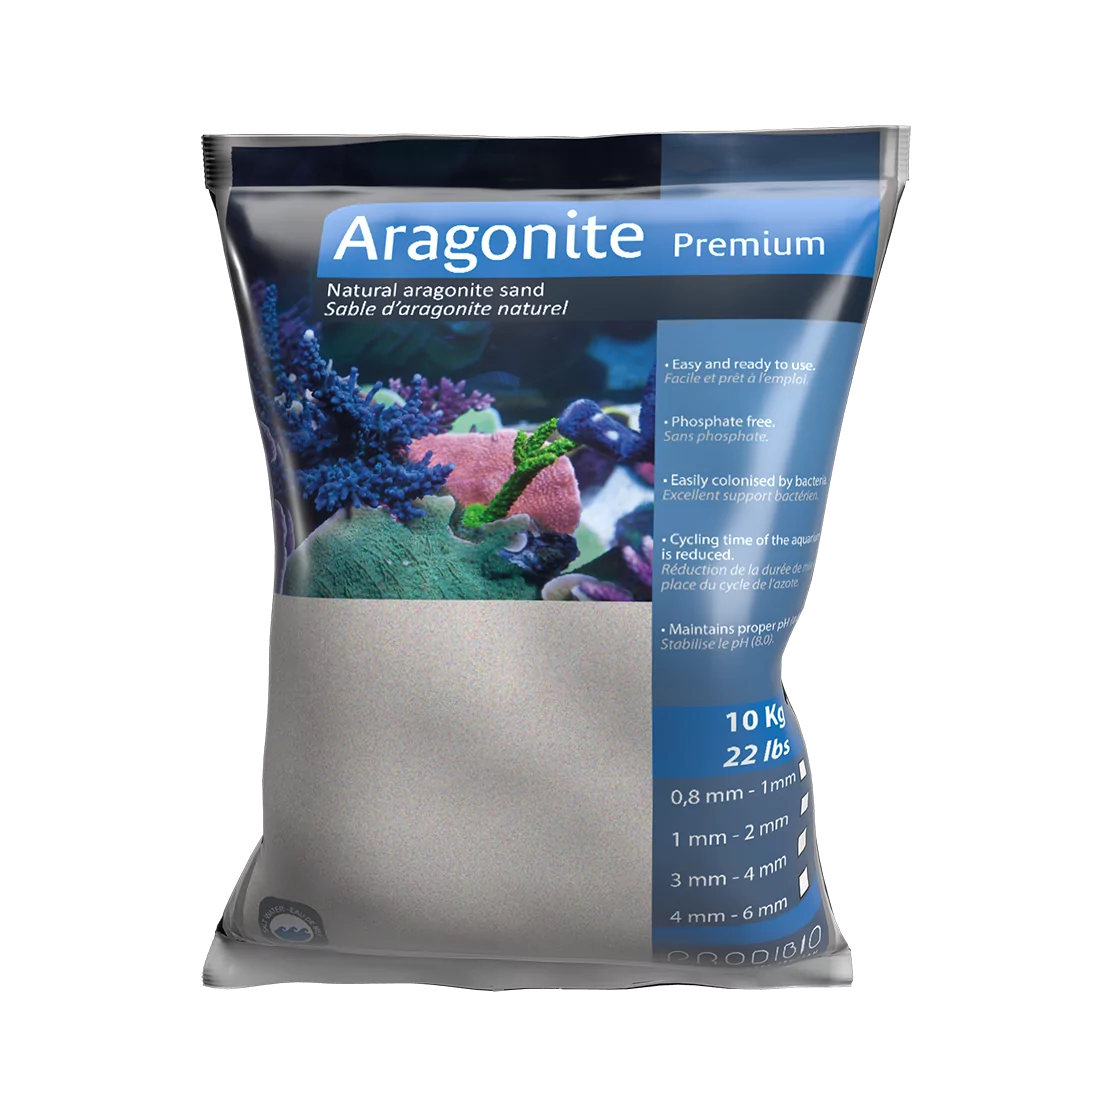 Aragonite Premium 1 - 2mm 10 kgs